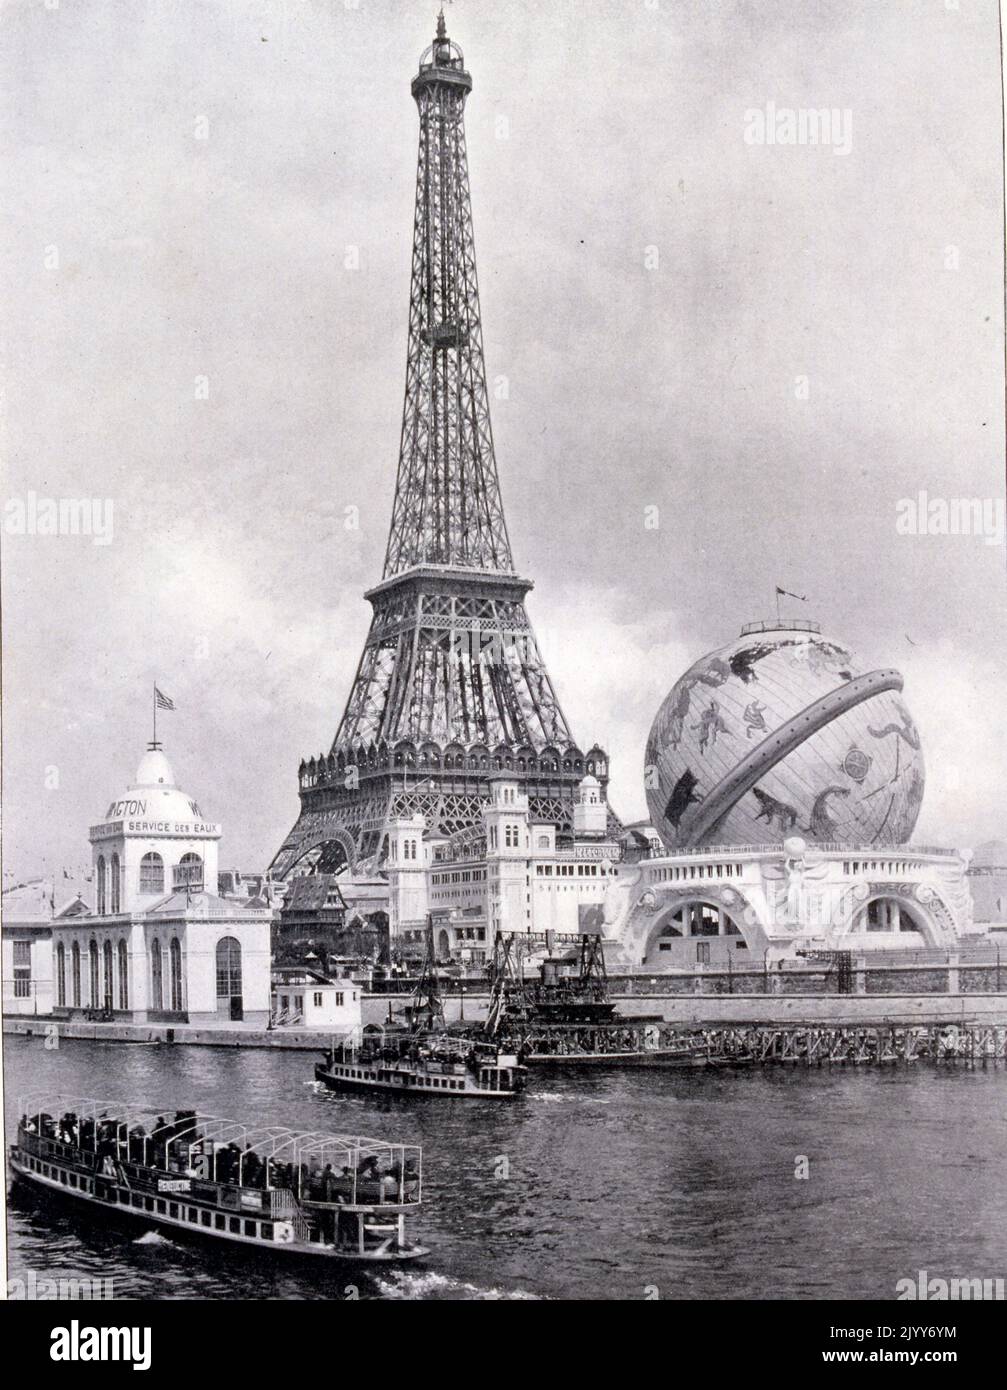 Ausstellung Universelle (Weltausstellung) Paris, 1900; fehlende und weiße Fotografie. Der Himmelskugel neben dem Eiffelturm Blick vom Fluss über die seine. Stockfoto